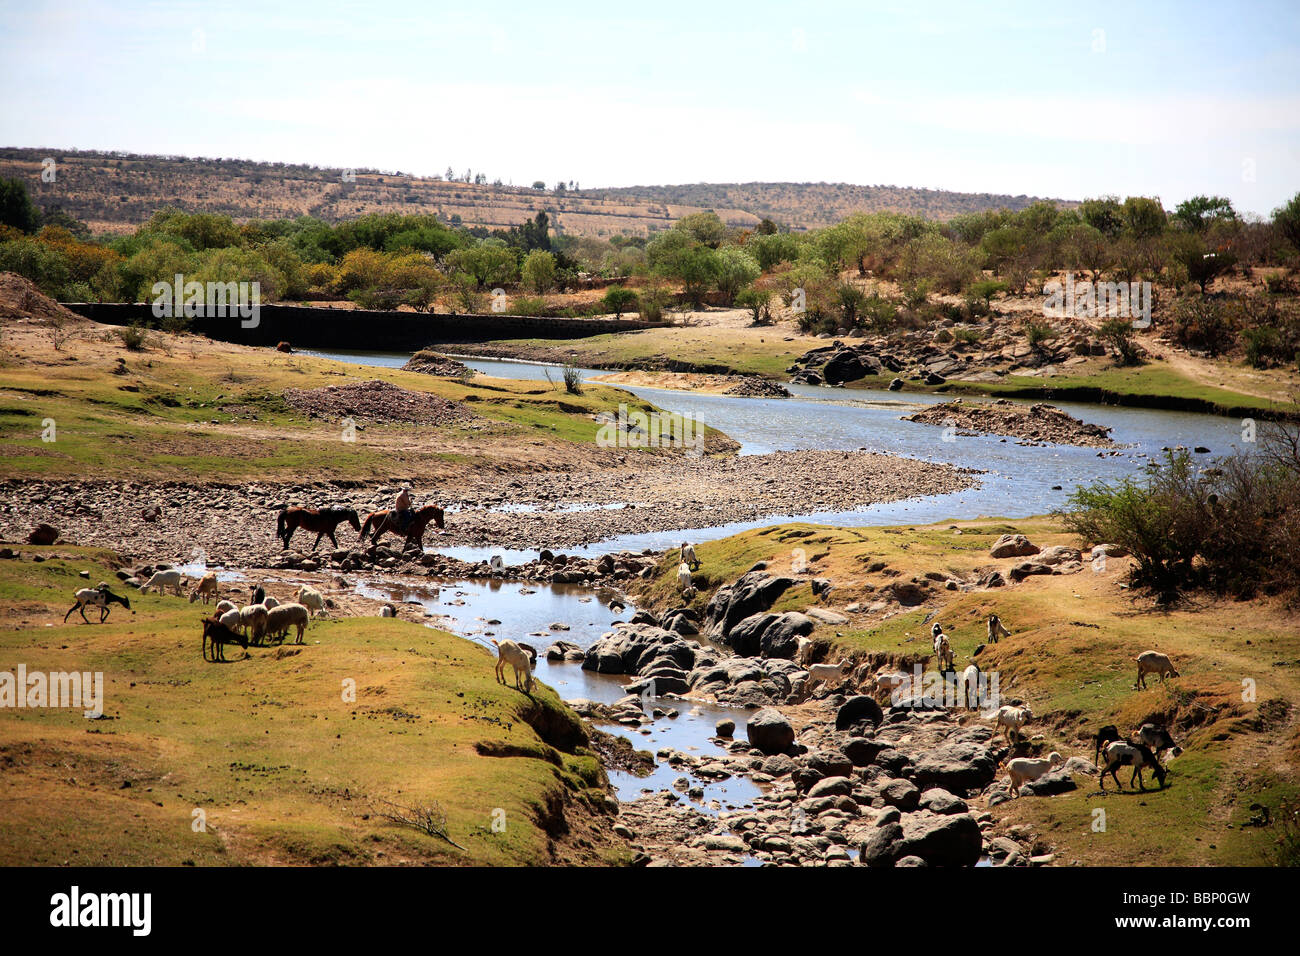 Paesaggio con fiume cavalli che lo attraversano in un nostalgico immagine ispira Deserto in pace splendidi orizzonti verde alla luce del sole Foto Stock